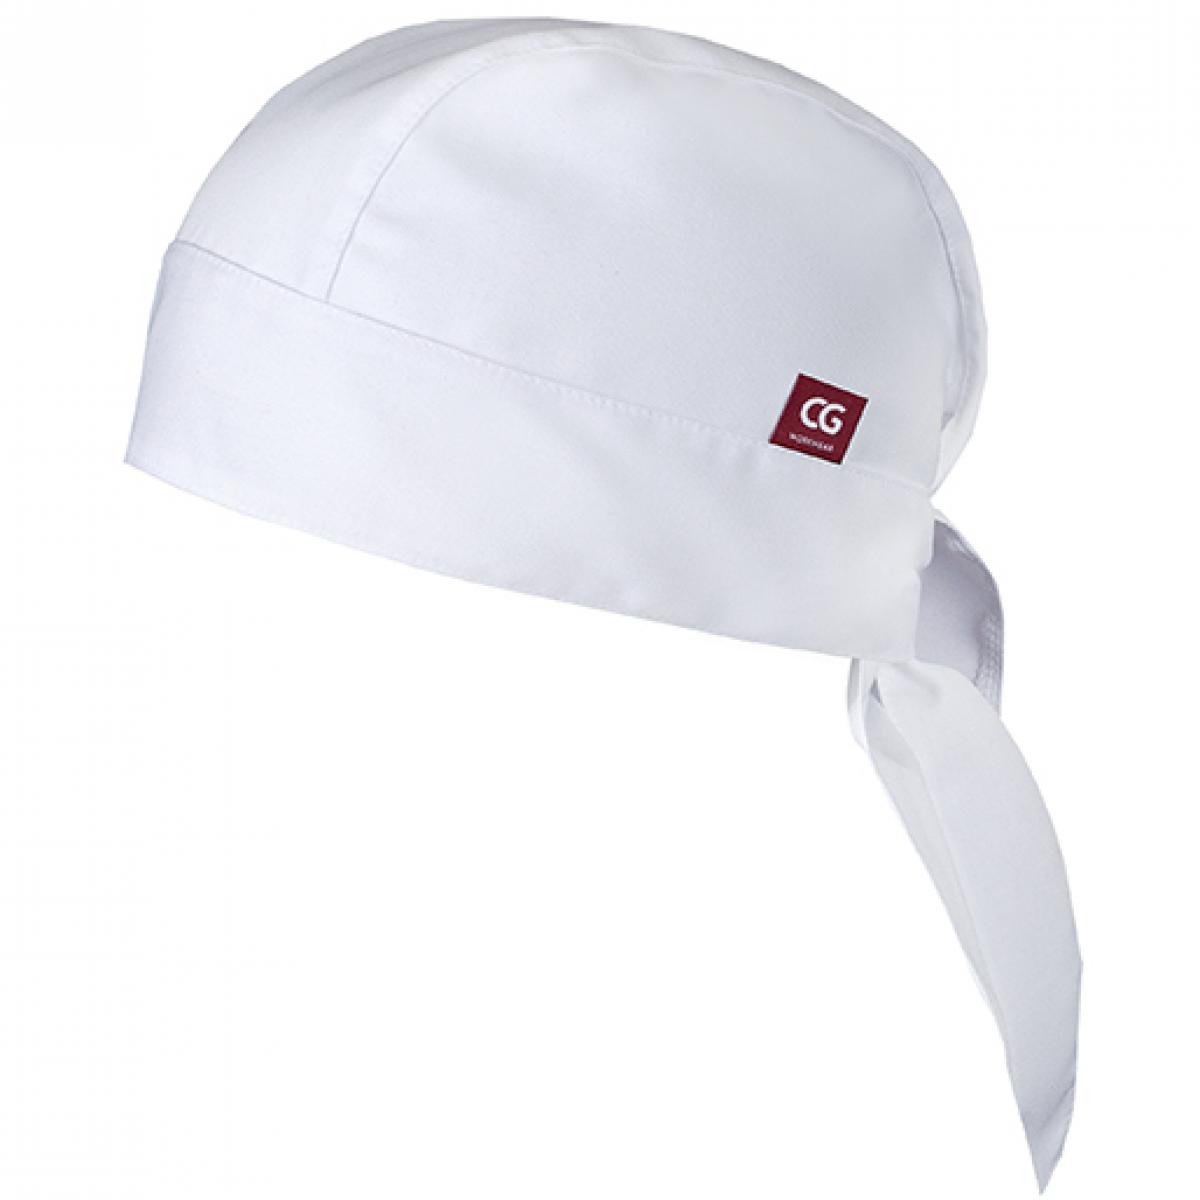 Hersteller: CG Workwear Herstellernummer: 00185-01 Artikelbezeichnung: Kochmütze Prato Classic - Bandbreite 4,5 cm Farbe: White